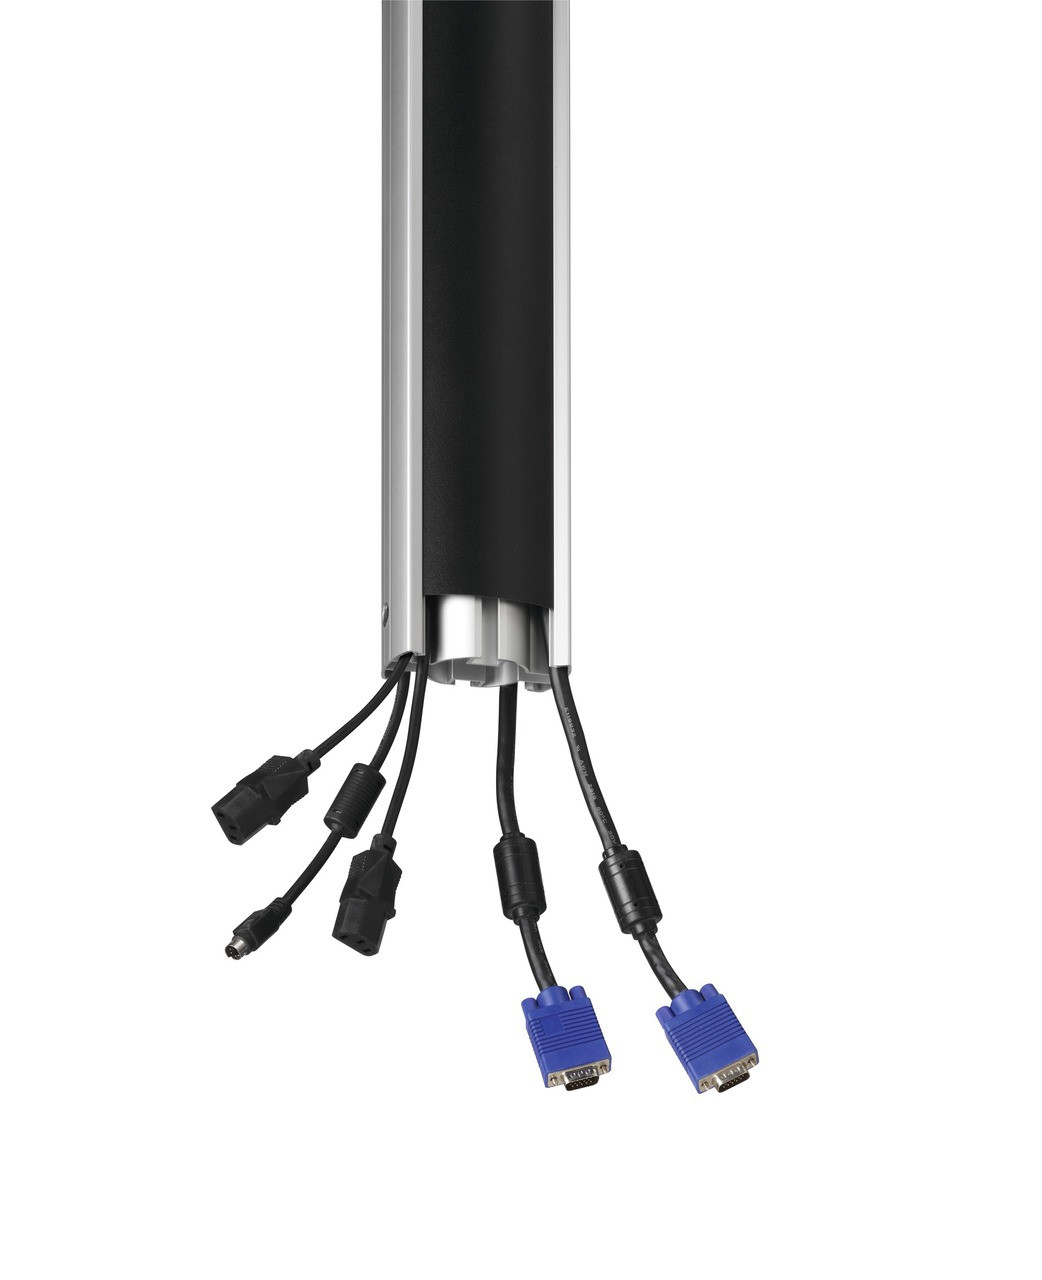 Vogels PUC2508 Connect-It Pole with Cable Management (0.8, 1.5, 3m)